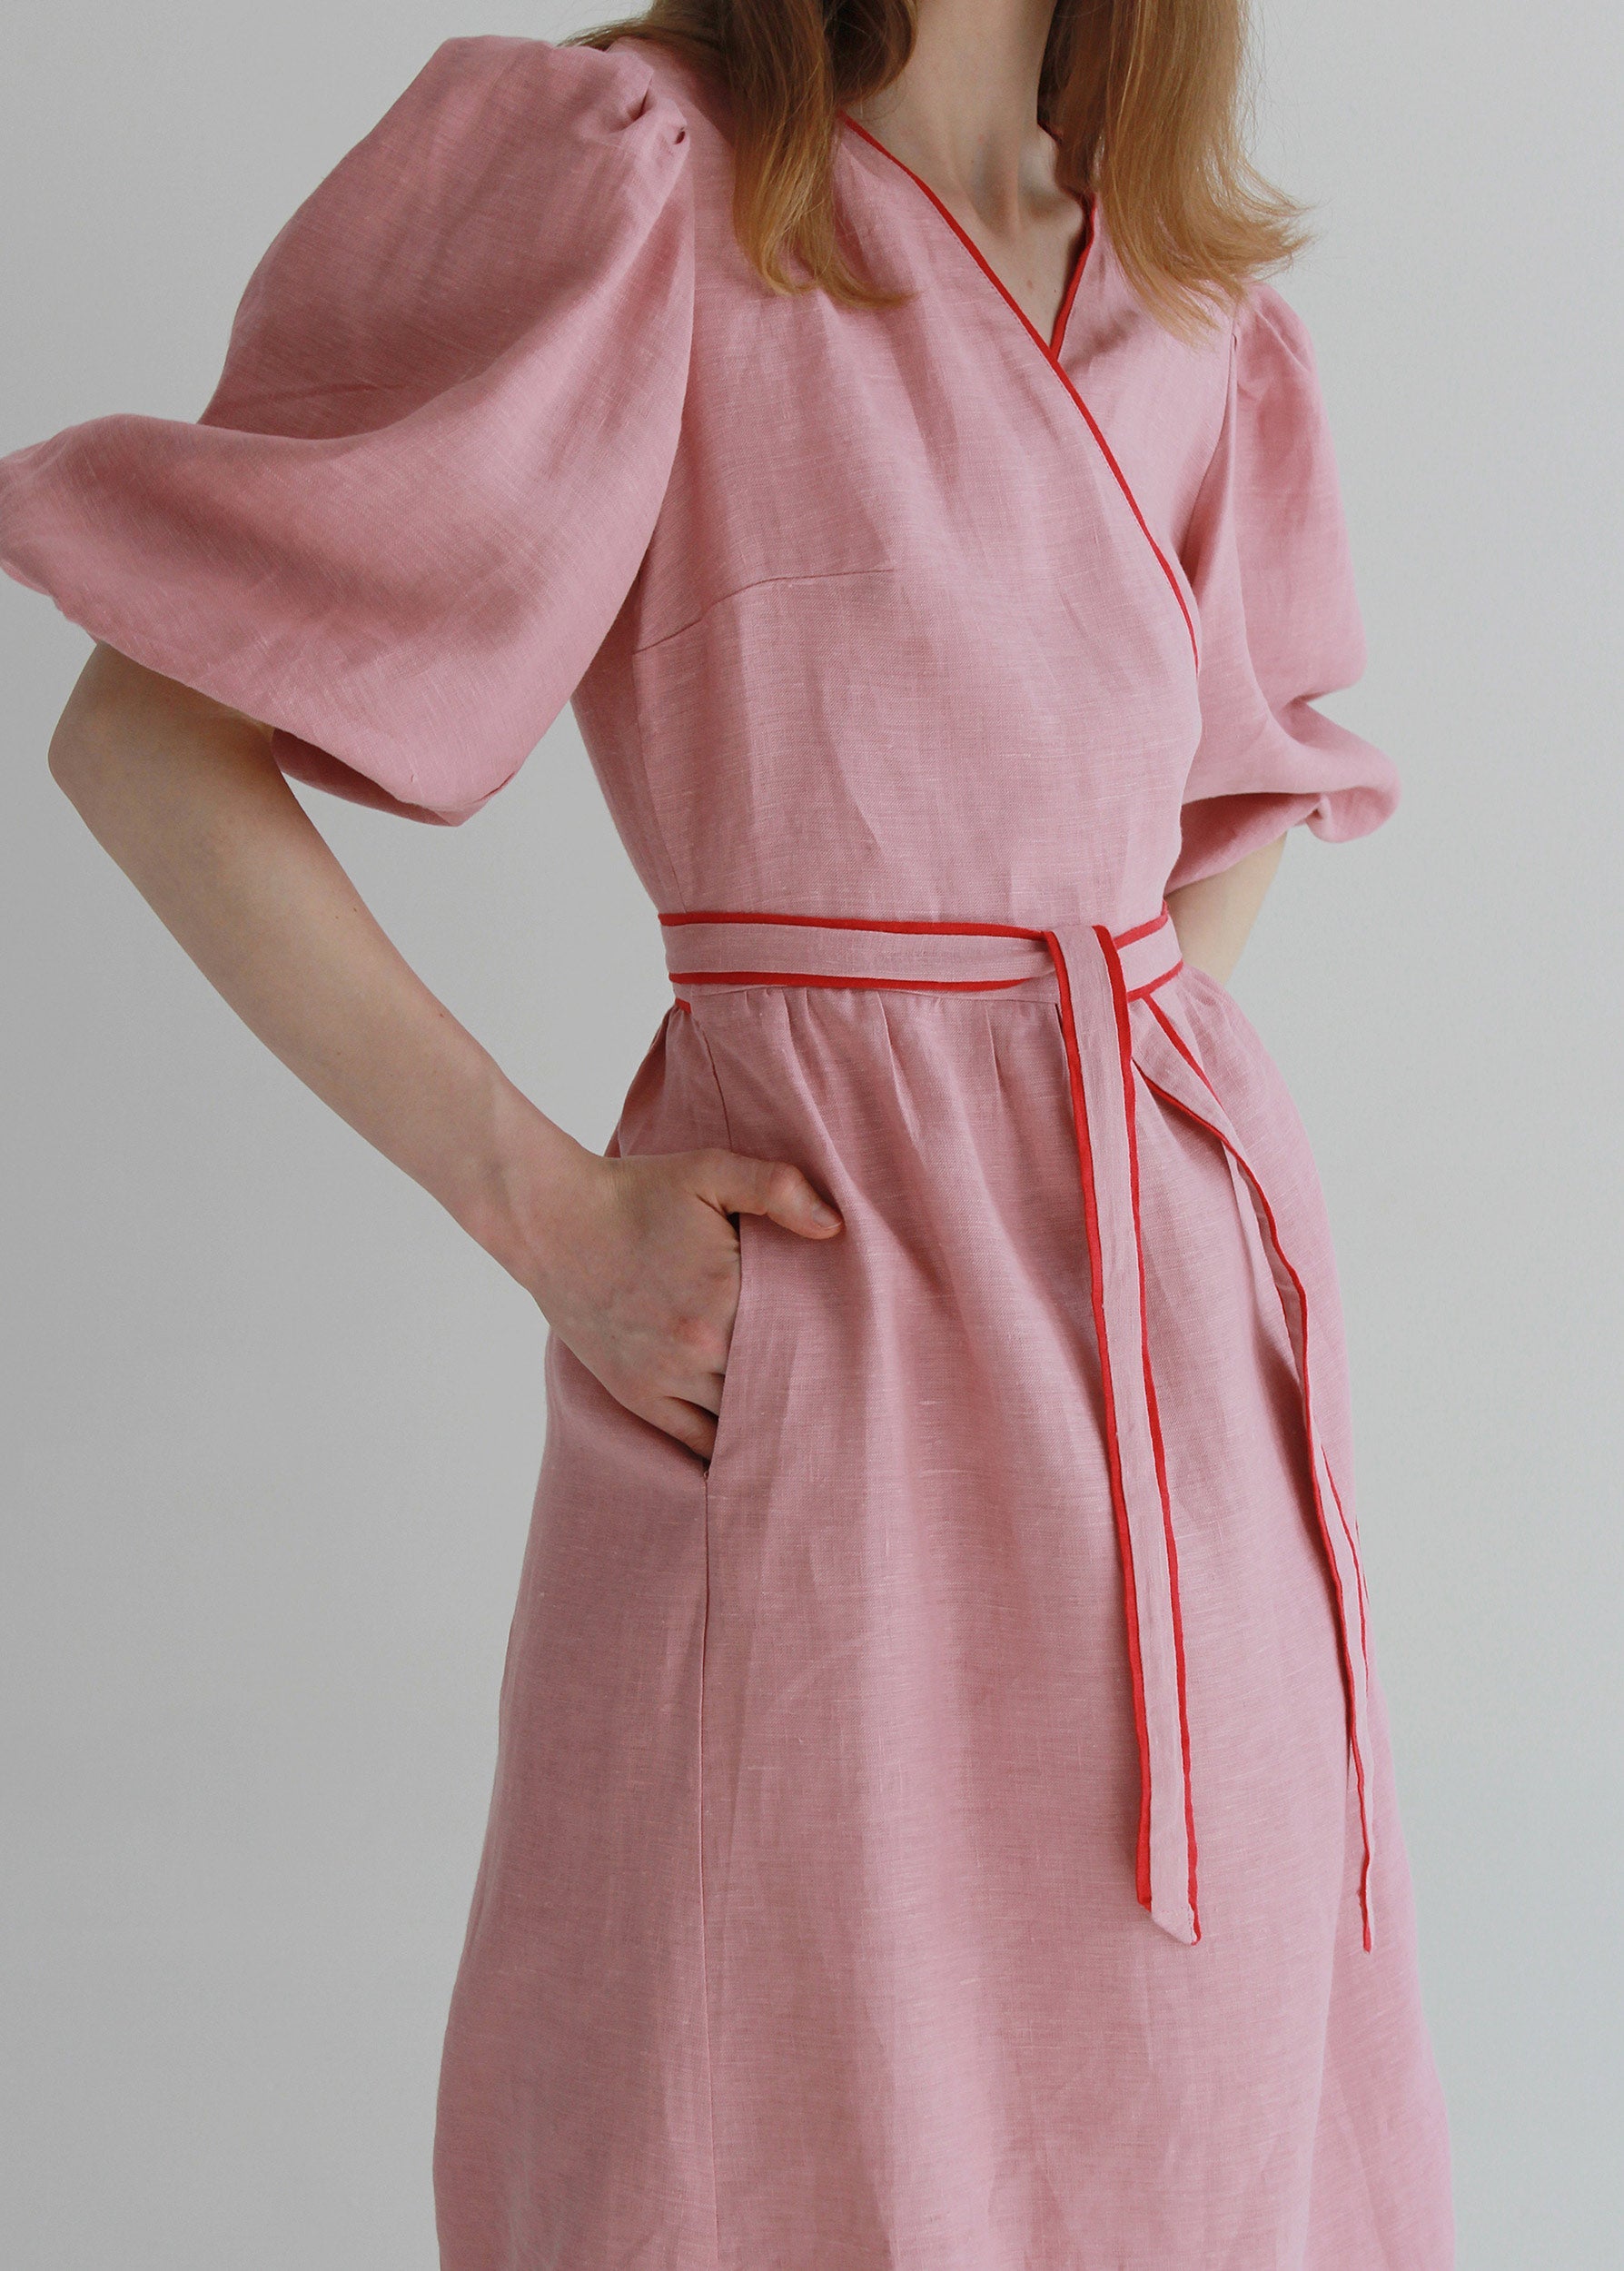 S/M size "Diana" Pink Linen Dress